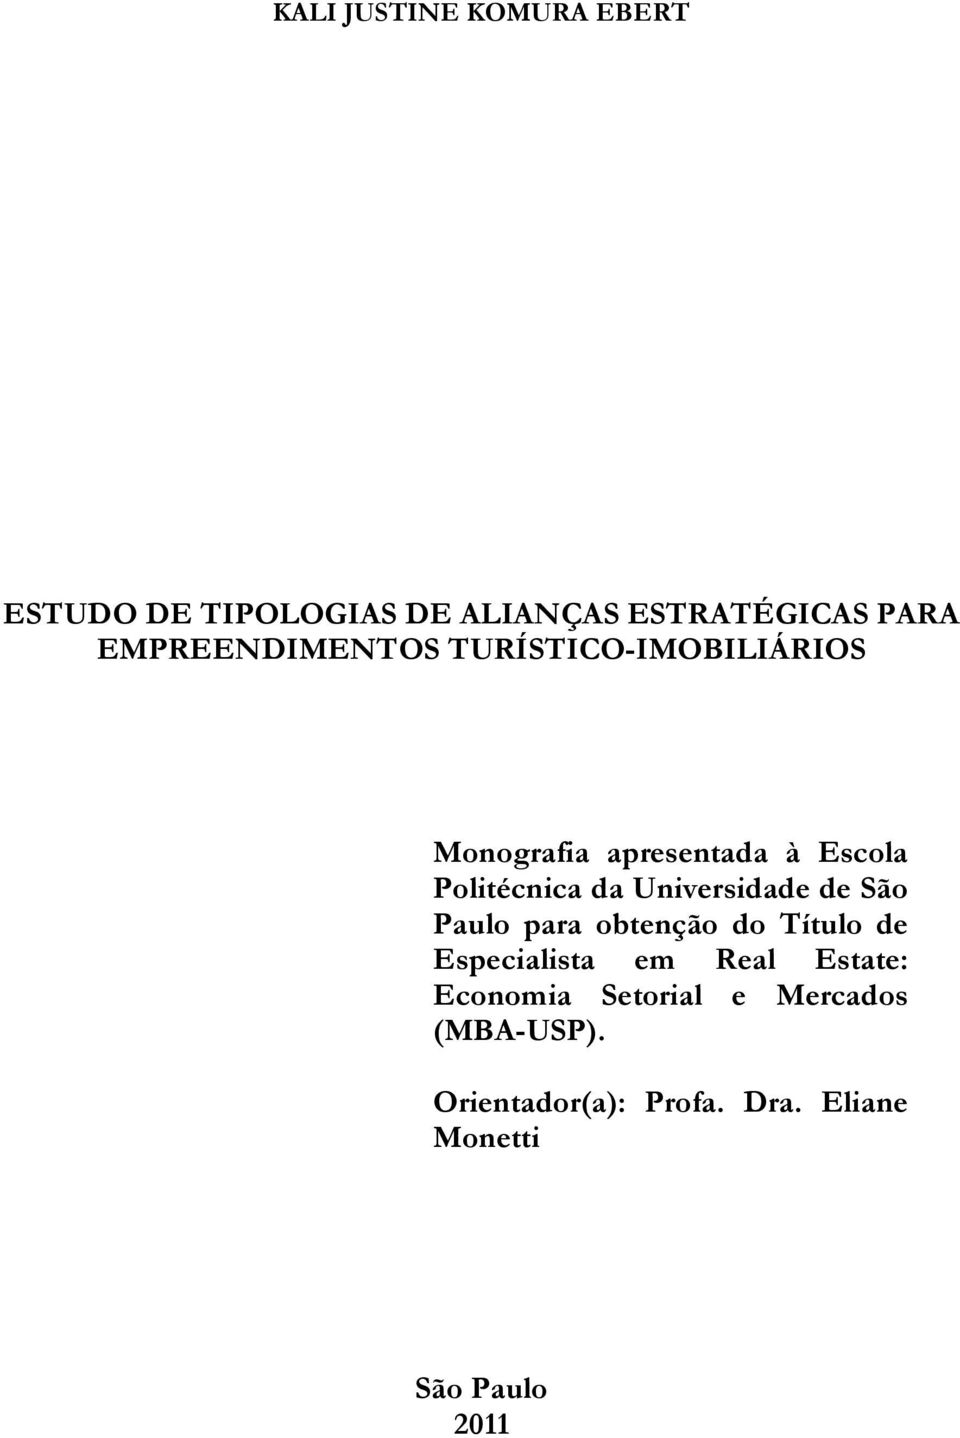 Universidade de São Paulo para obtenção do Título de Especialista em Real Estate: